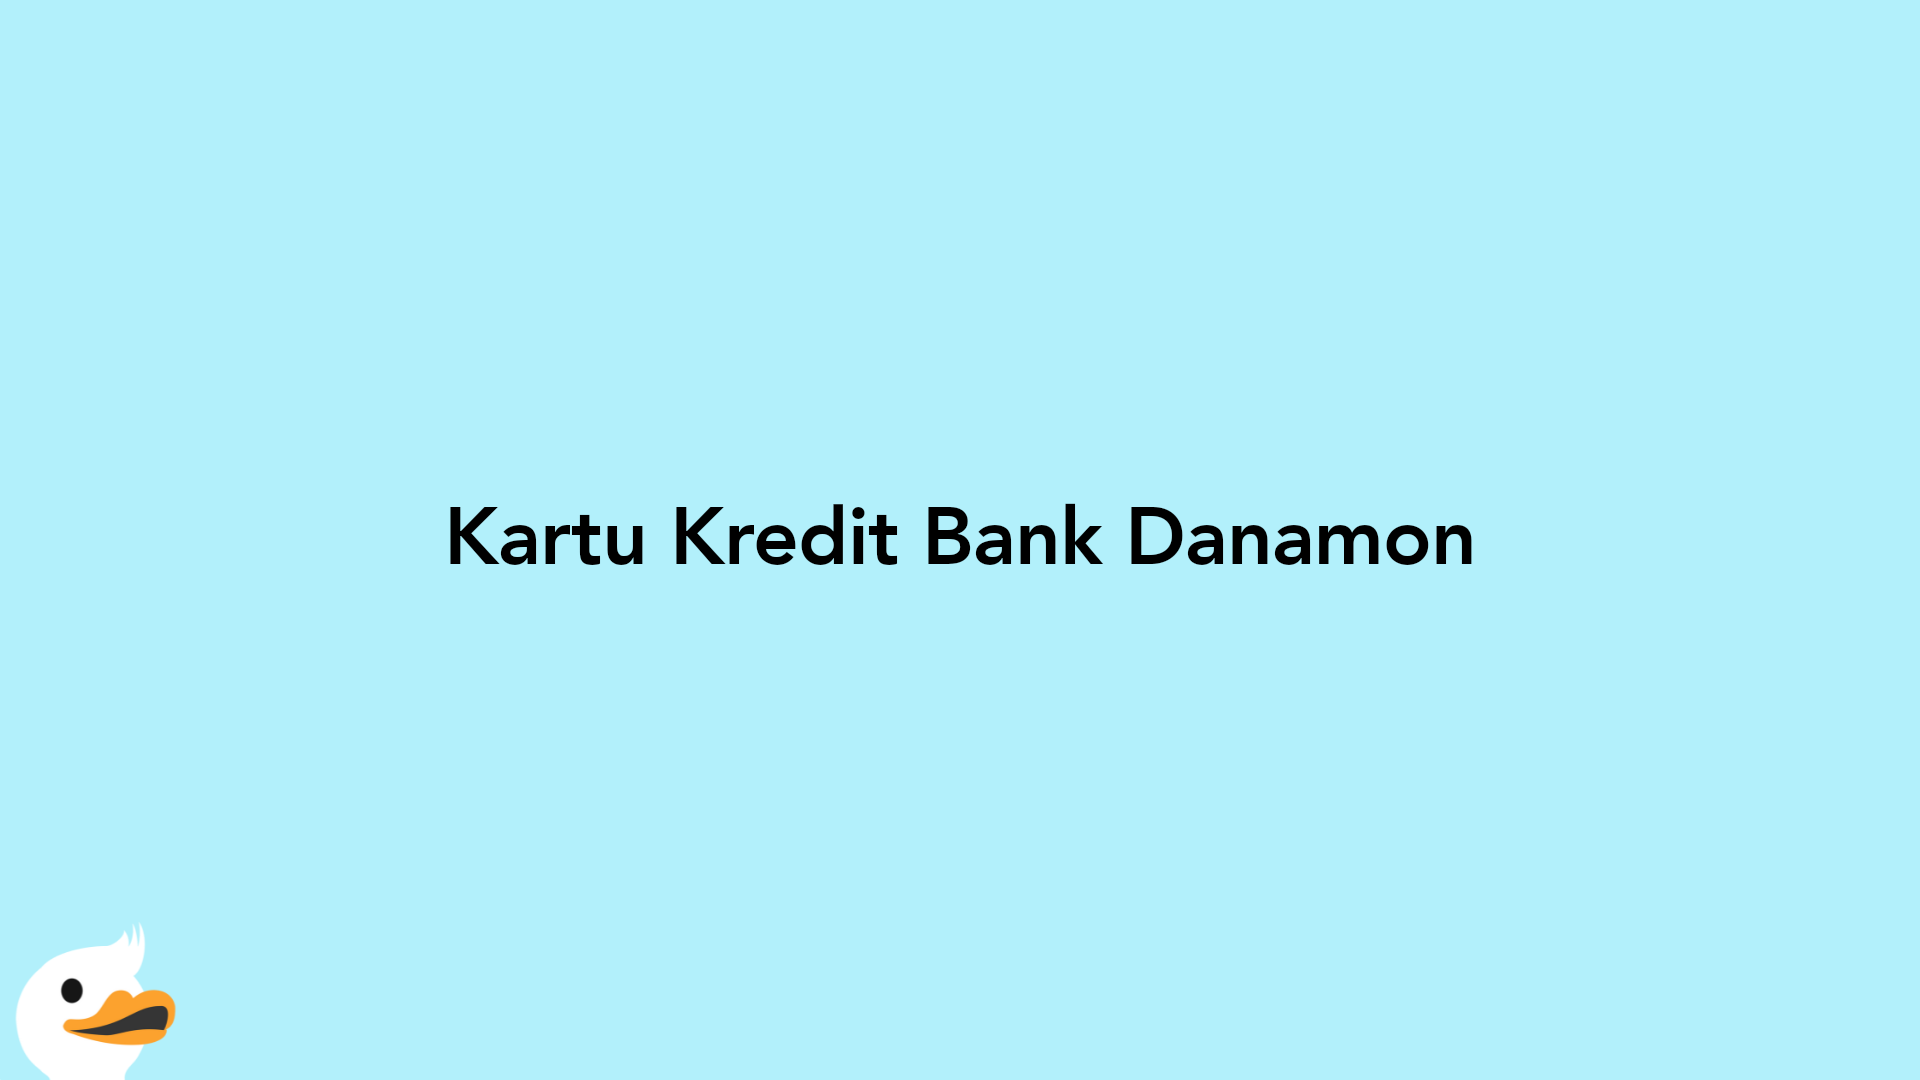 Kartu Kredit Bank Danamon